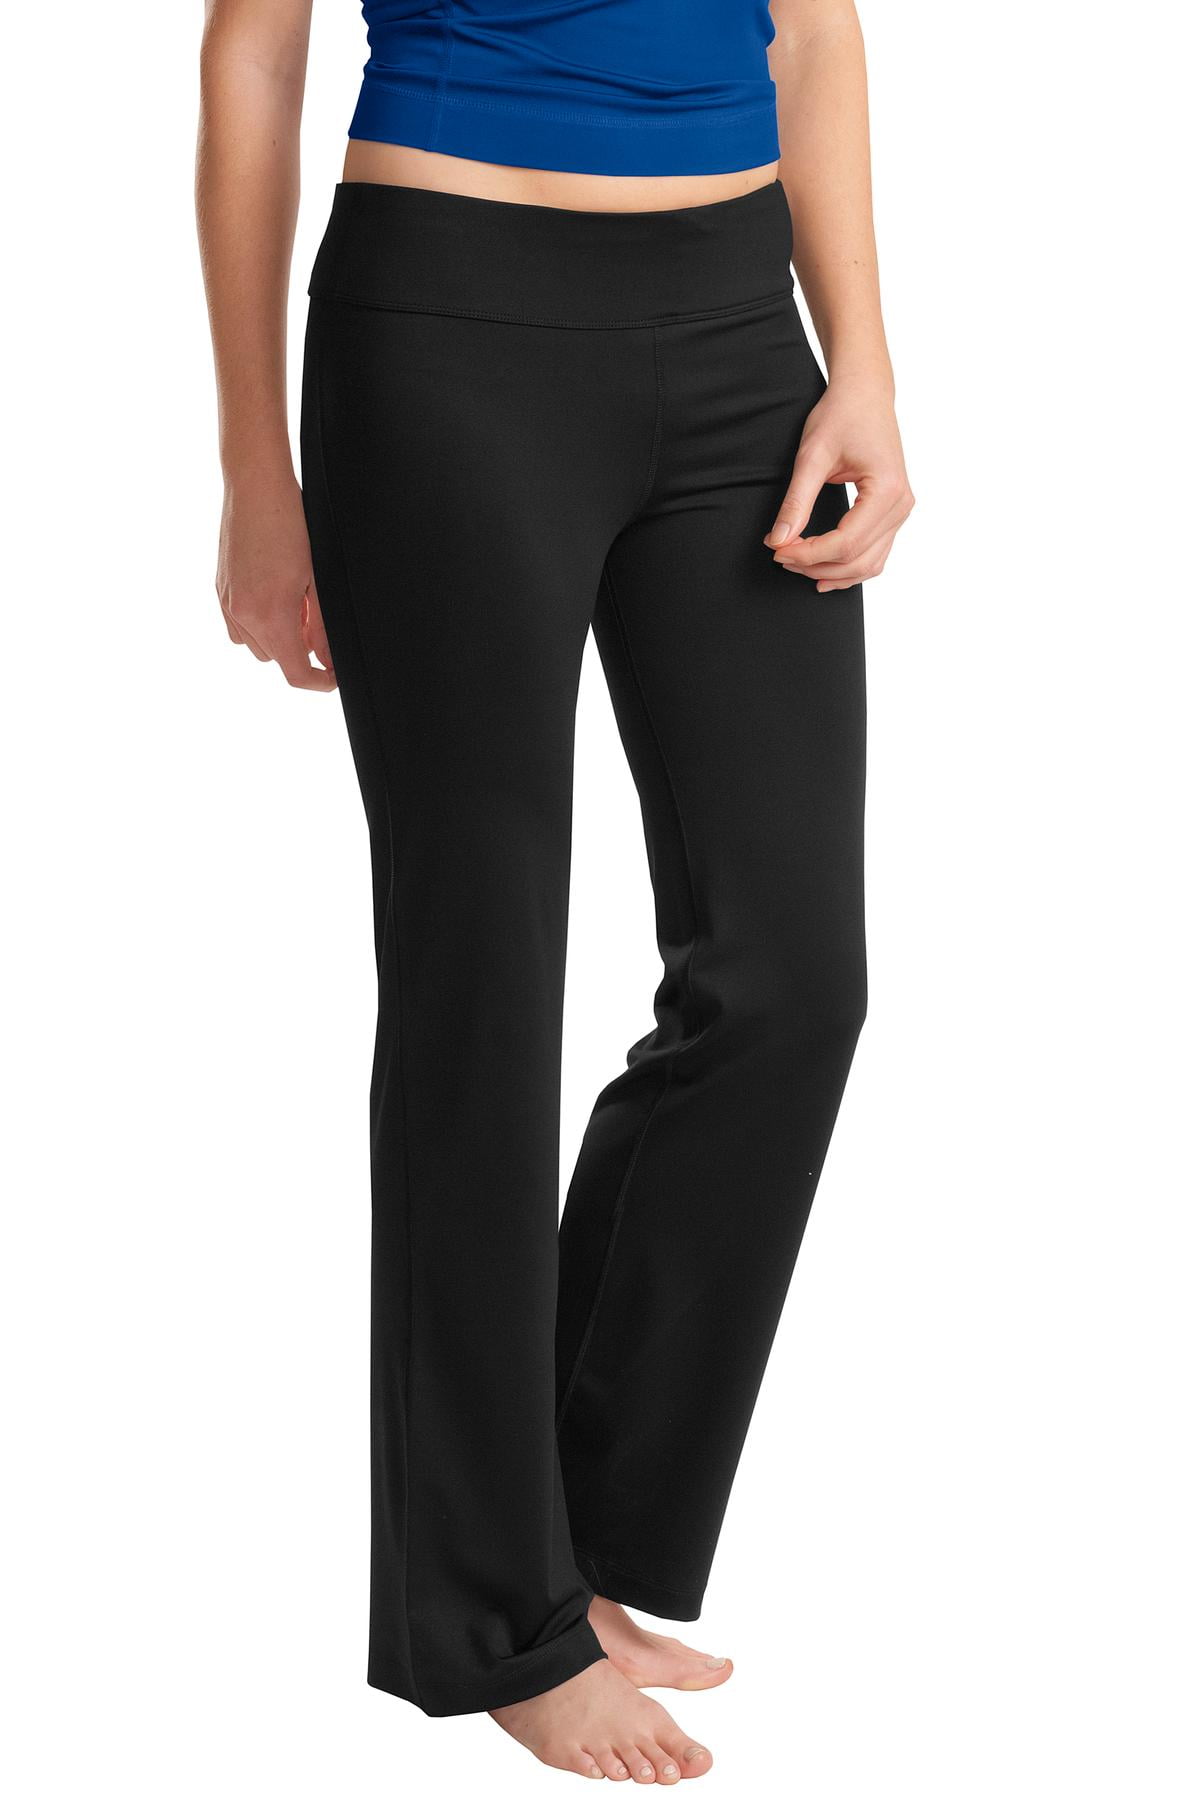 Tek Gear Shape Yoga Pants Womens XL Black Wide Leg Flowy 